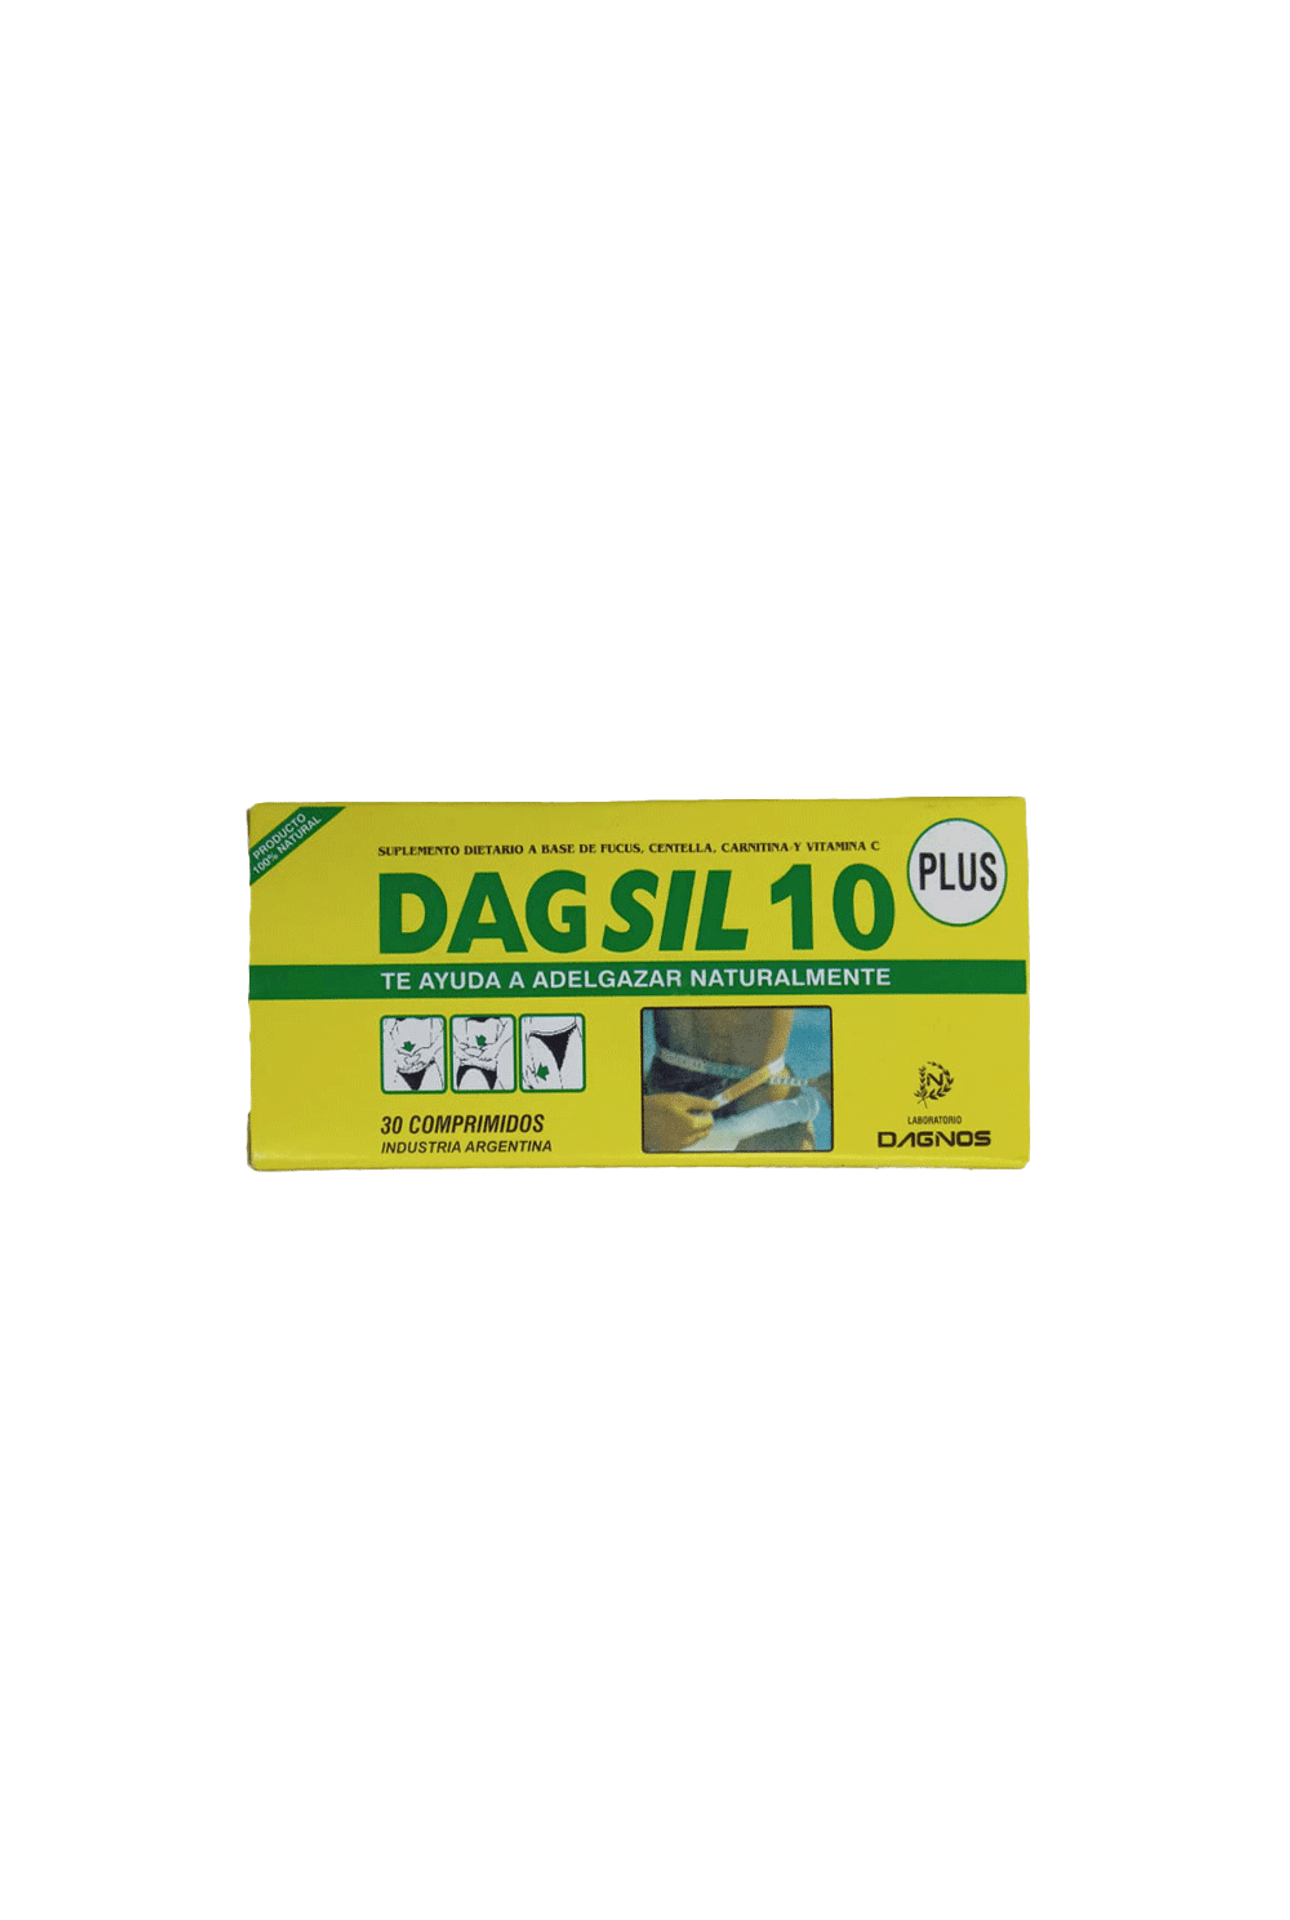 Suplemento-Dietario-Dagsil-10-Plus-x-30-comp-Dagsil-10-Plus